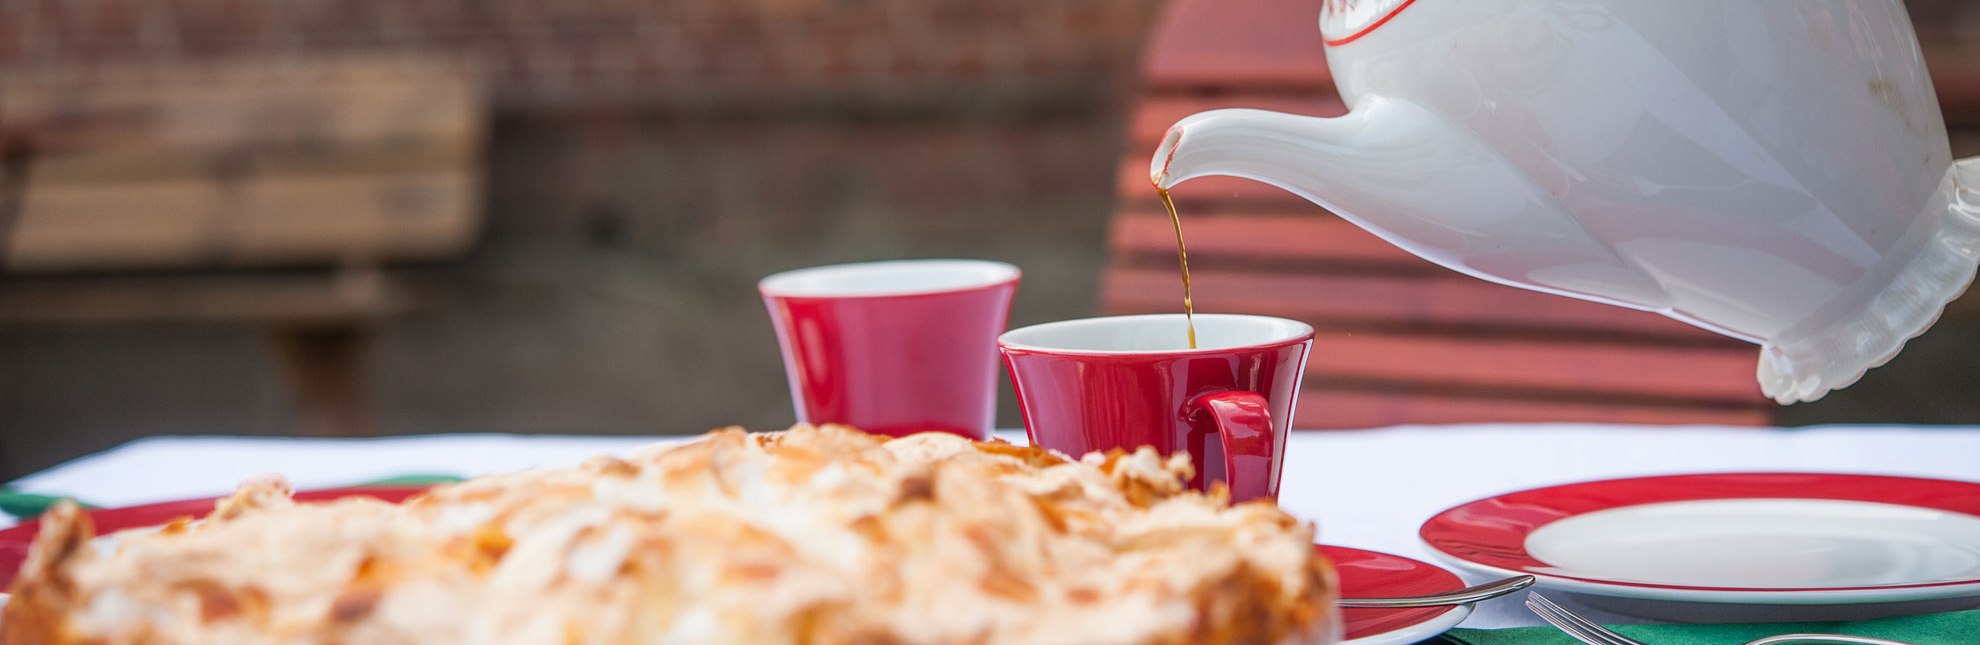 Kaffeeduft und frisch gebackene Torten im Café am See in Anker., © Nicole Franke/HLMS